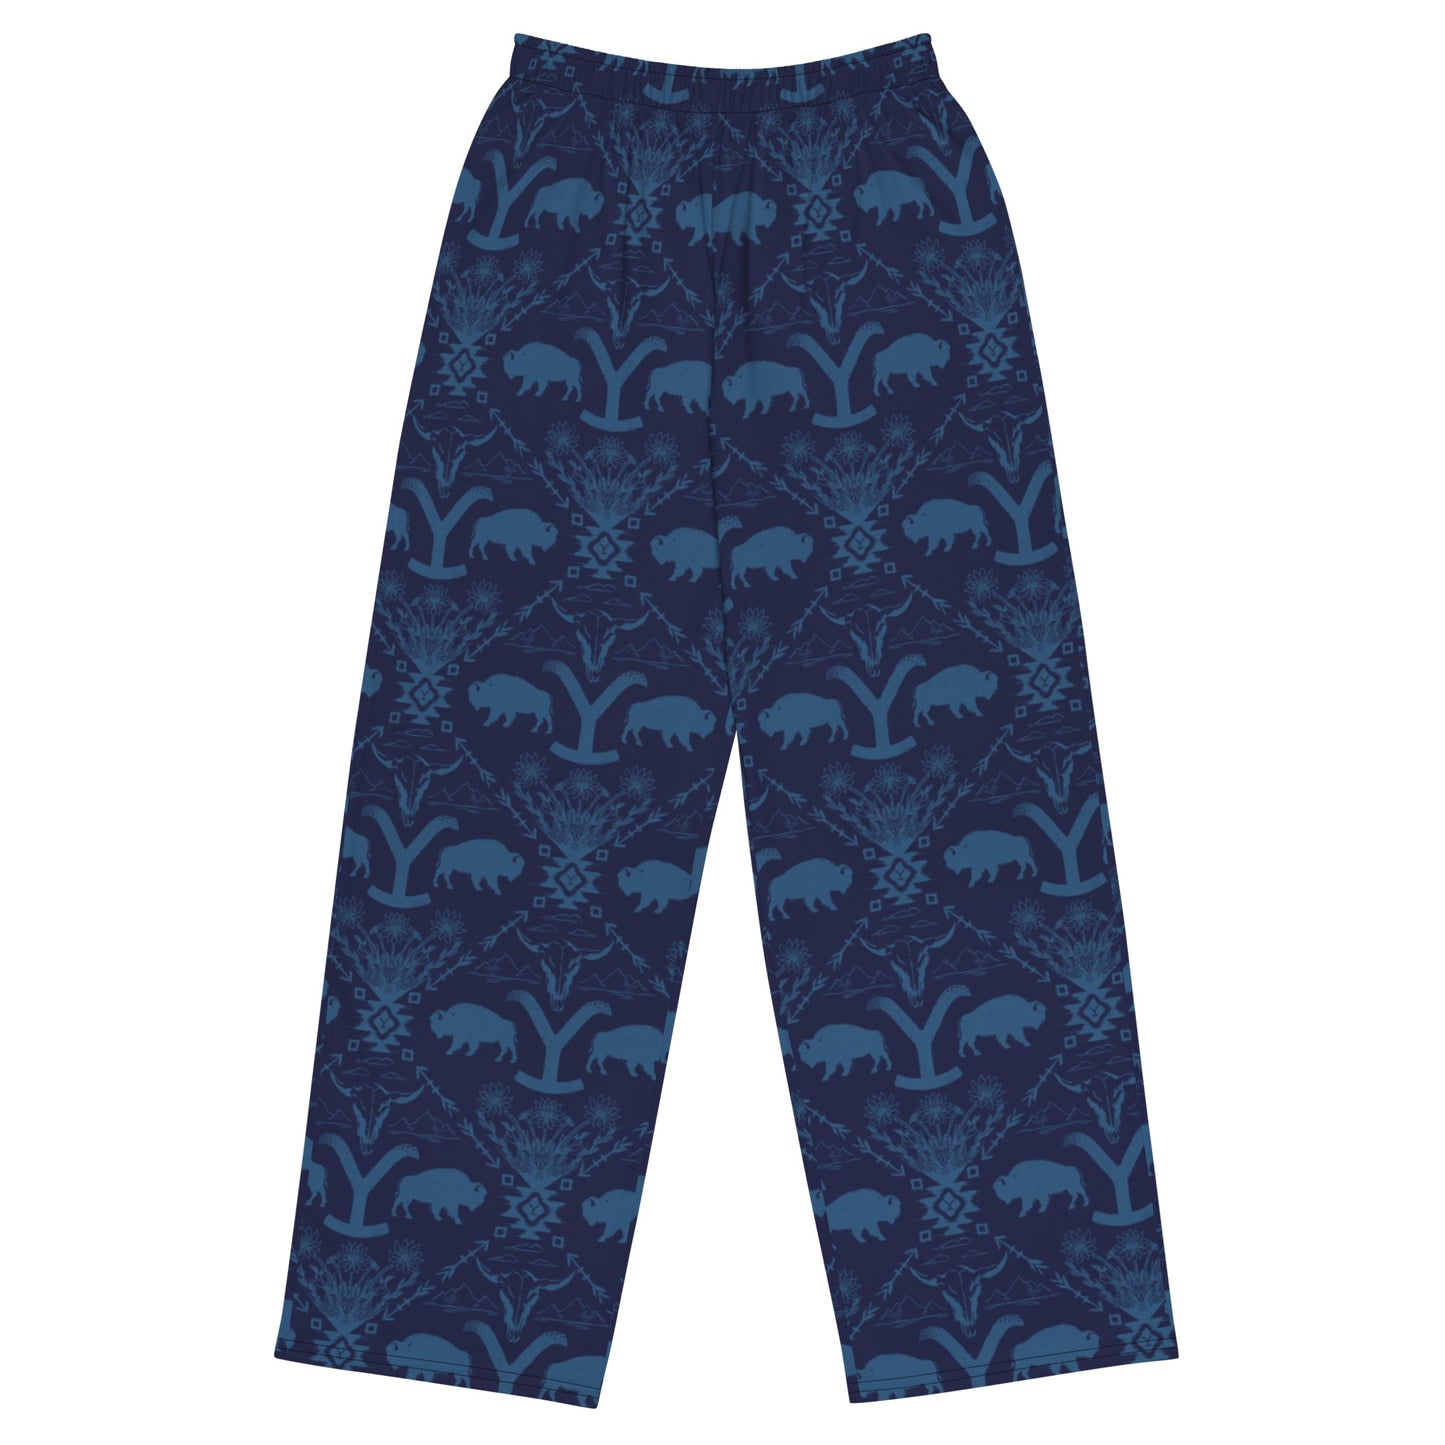 Yellowstone Buffalo Pajama Pants